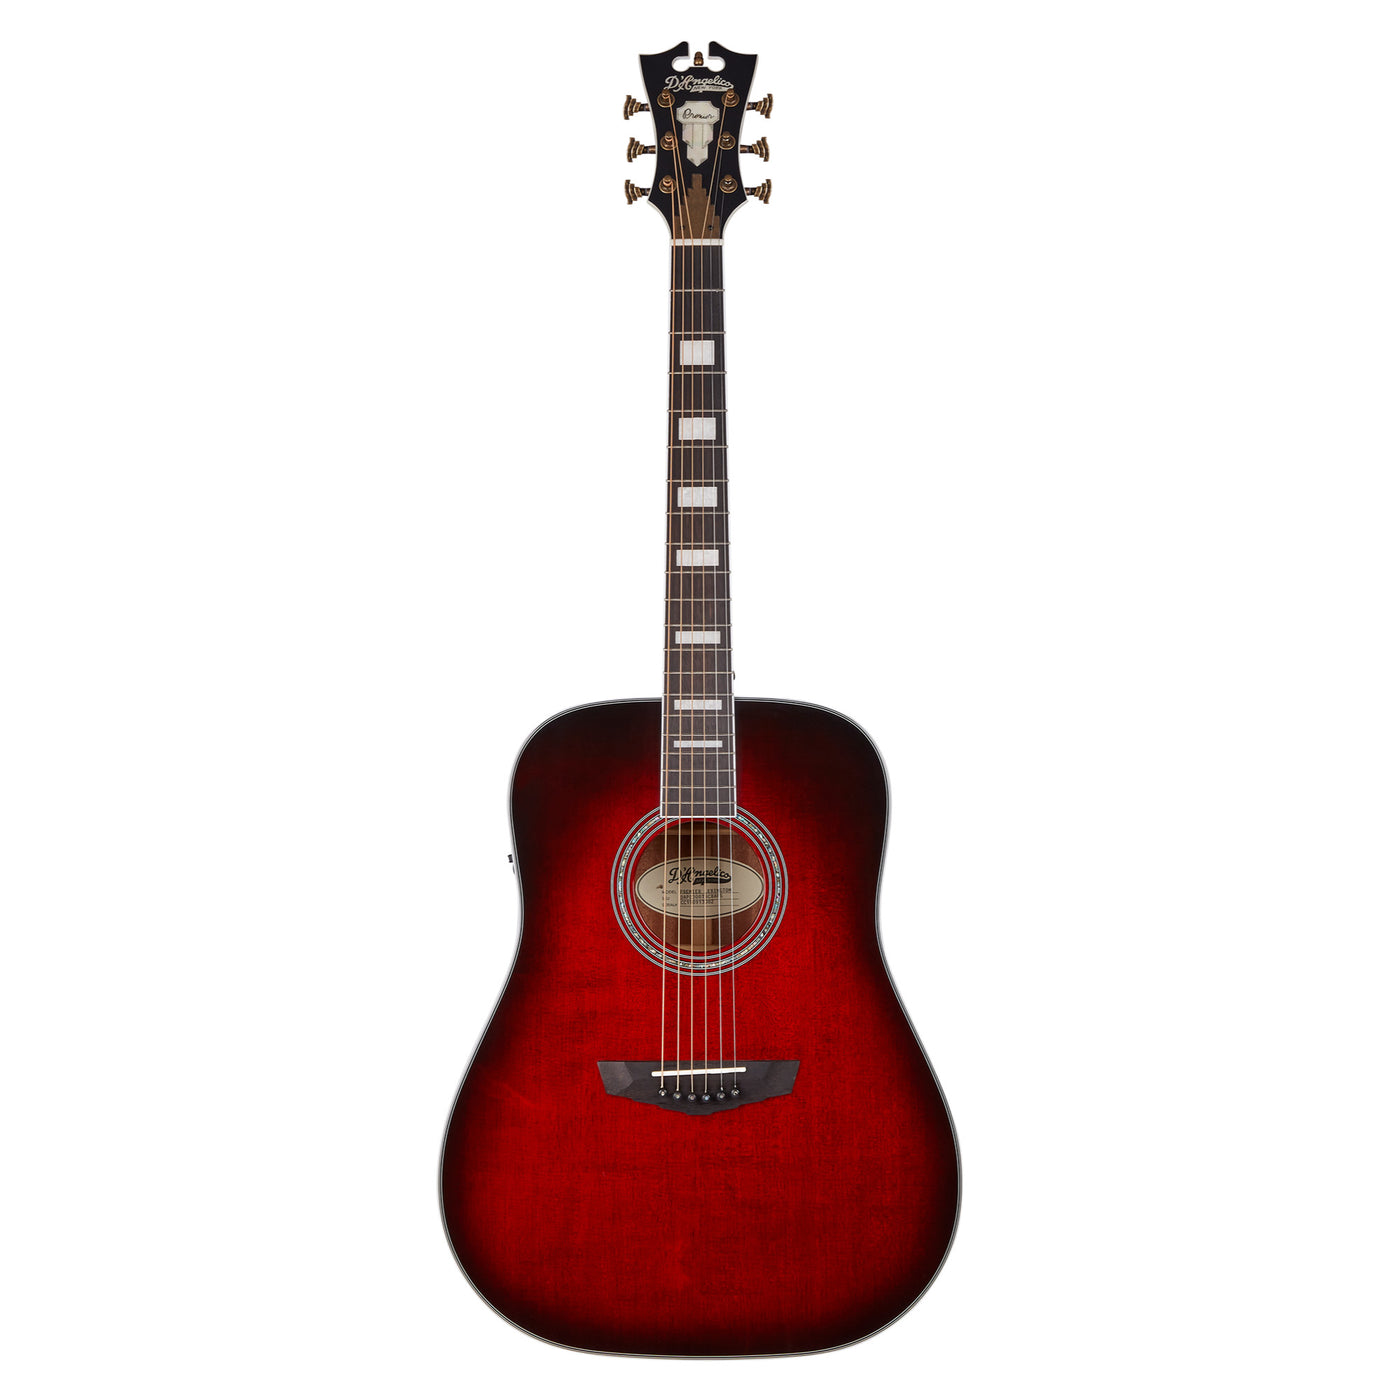 D’Angelico Premier Lexington Dreadnought Acoustic Electric Guitar, Black Cherry Burst (DAPD300TBCBAPS)